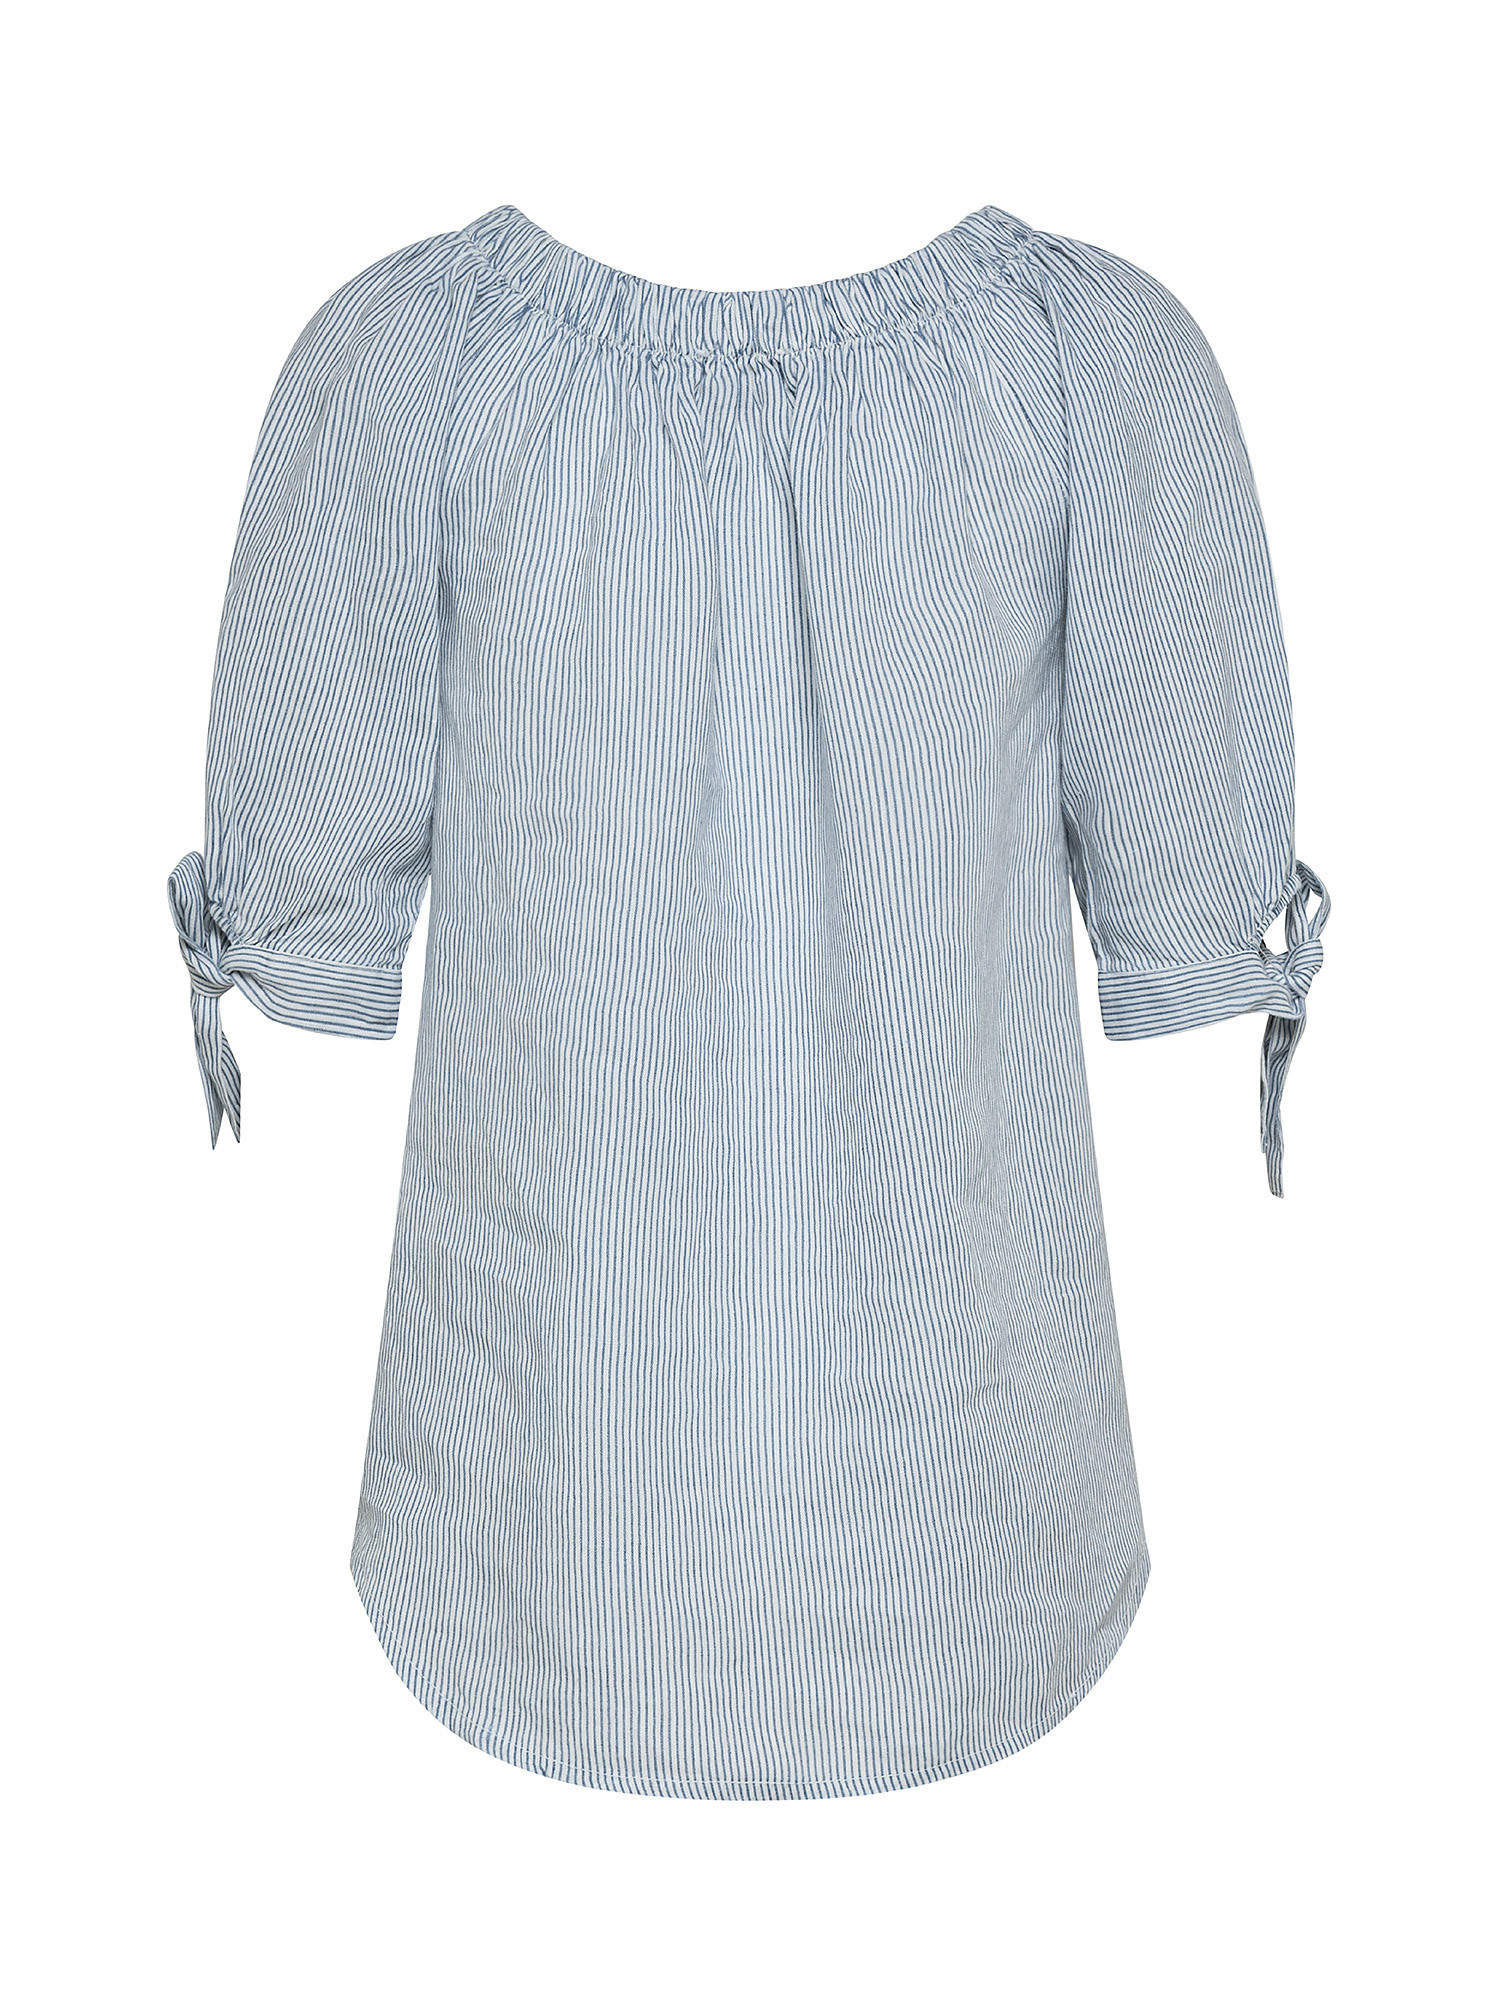 Blusa puro lino scollo arricciato con fiocco, Denim, large image number 1